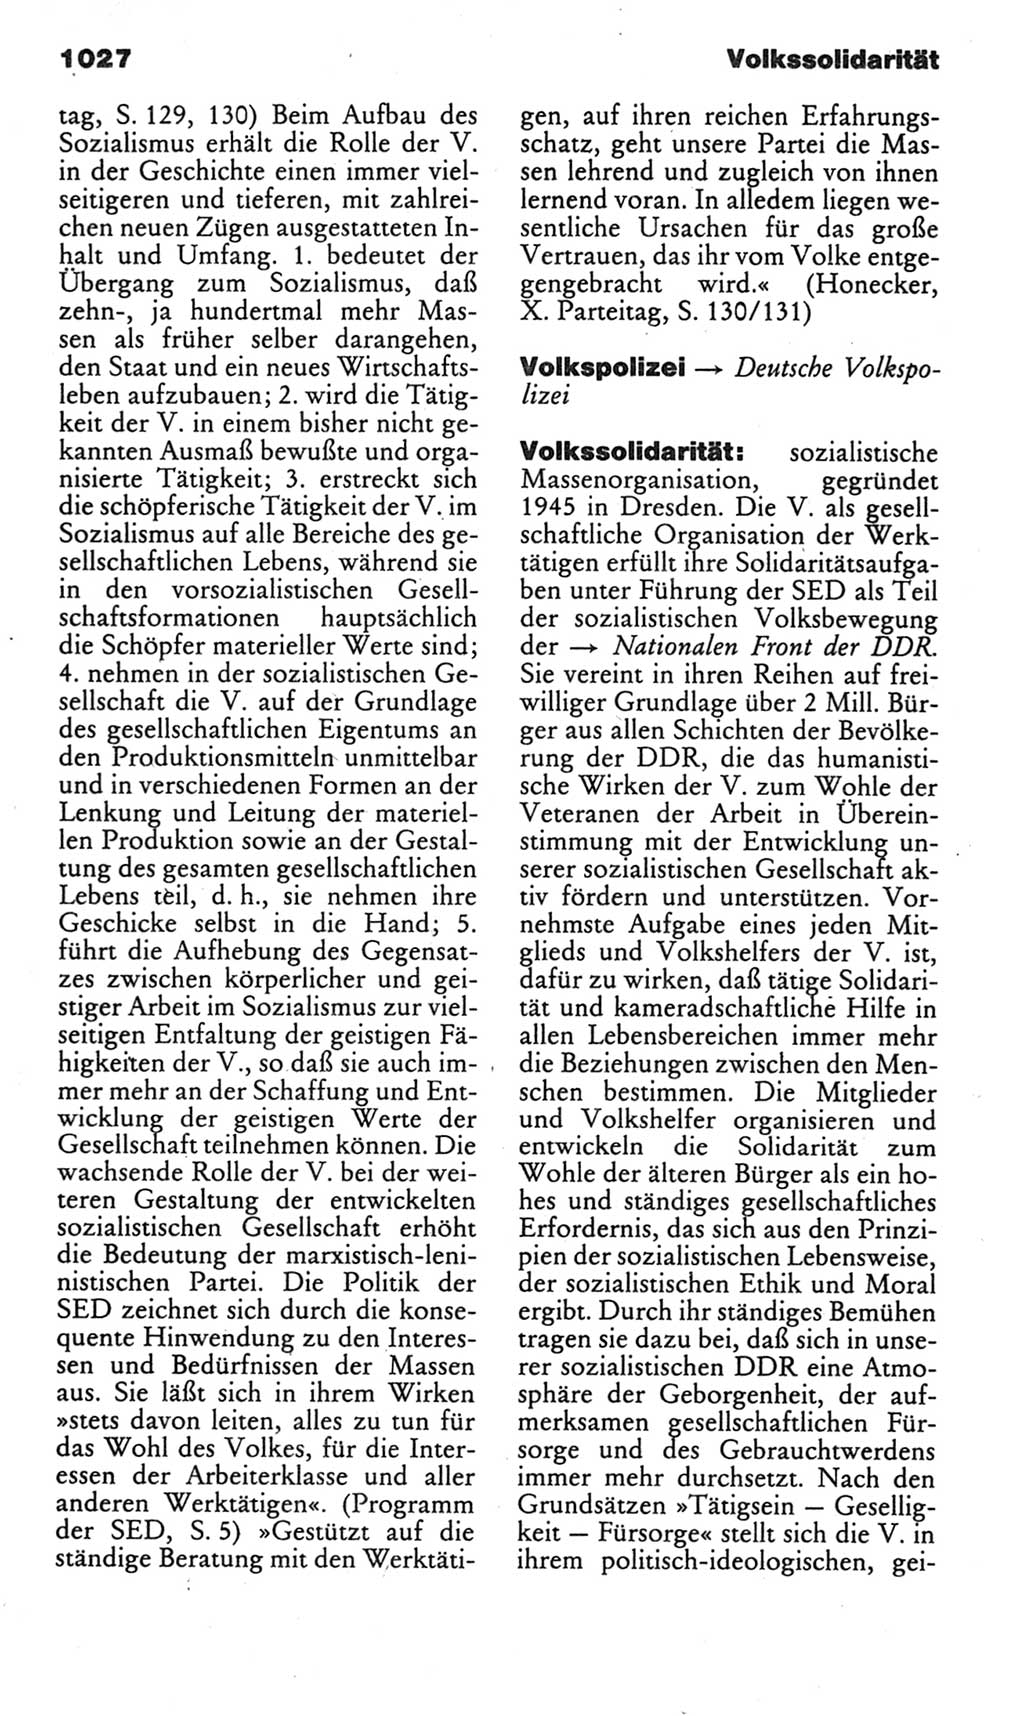 Kleines politisches Wörterbuch [Deutsche Demokratische Republik (DDR)] 1985, Seite 1027 (Kl. pol. Wb. DDR 1985, S. 1027)